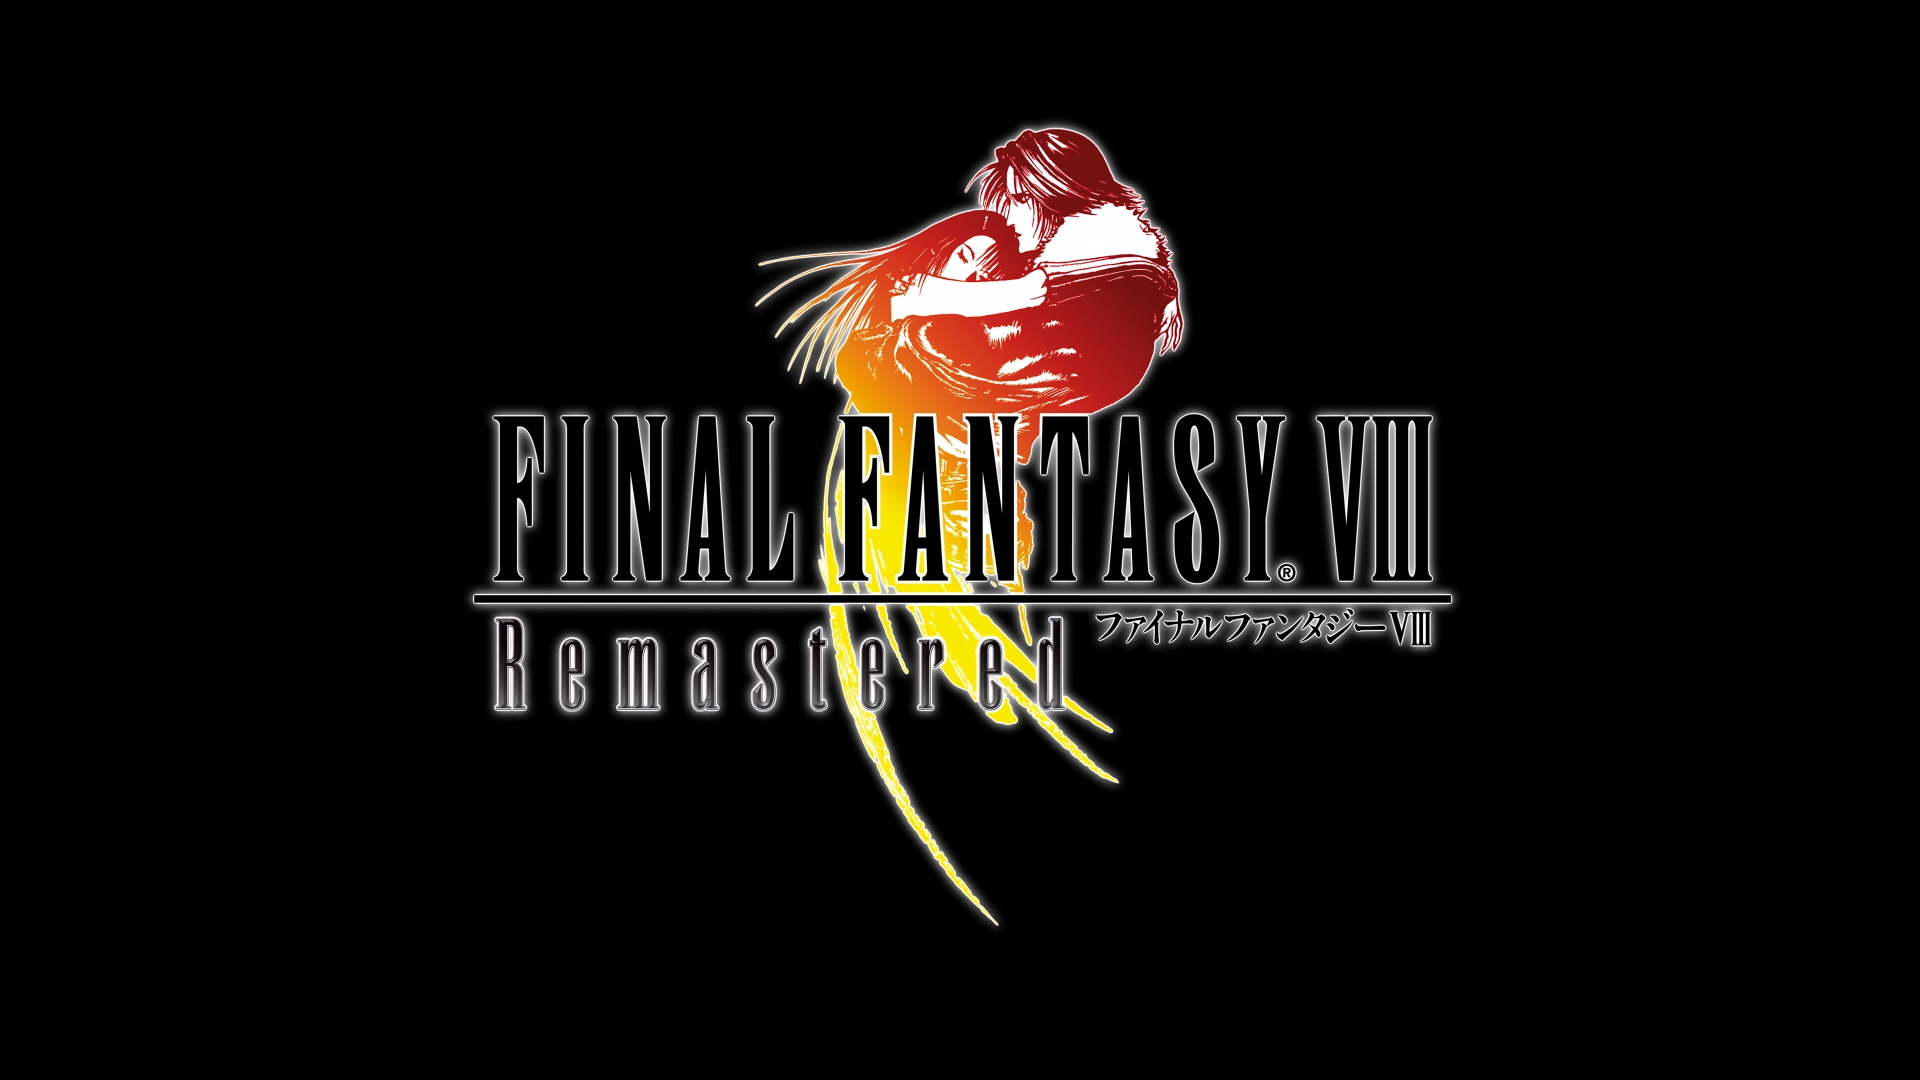 Final Fantasy Viii Remastered 発売決定のお知らせ ニュース ファイナルファンタジーポータルサイト Square Enix